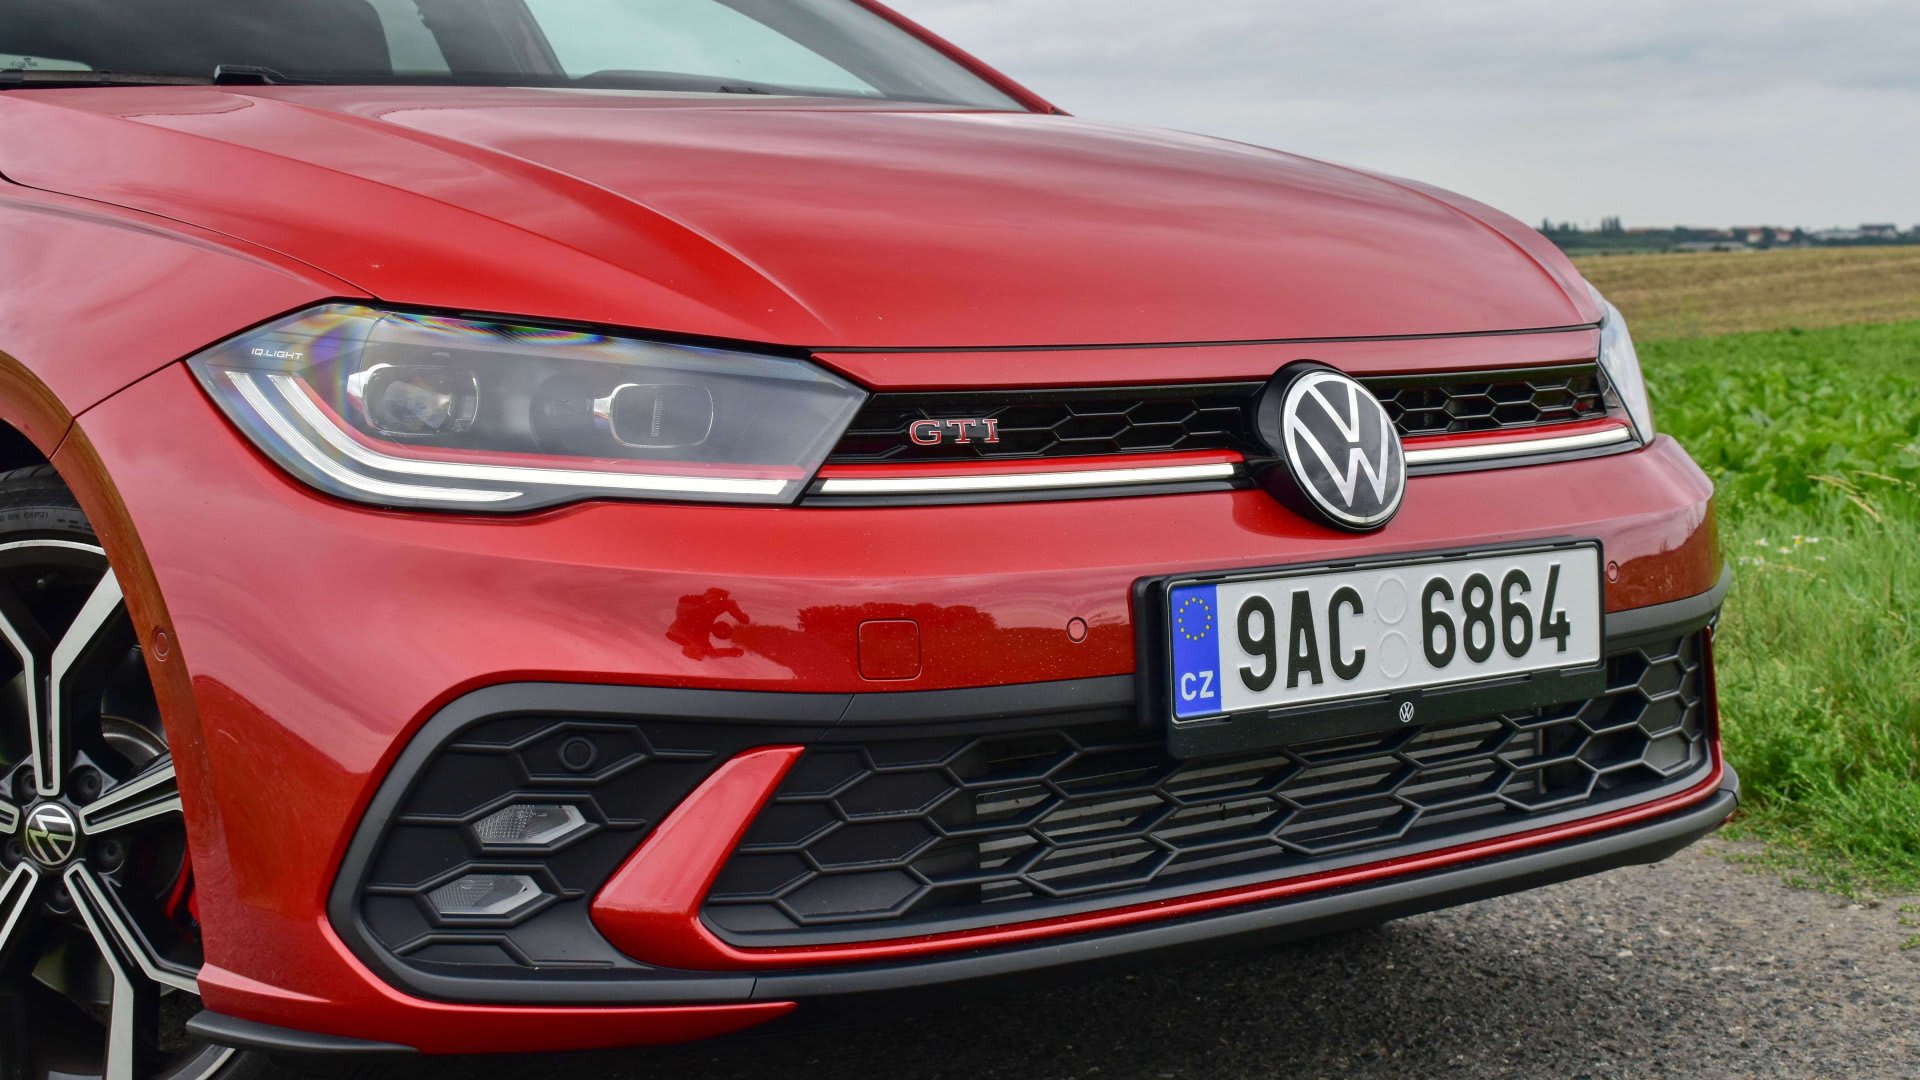 Volkswagen Polo GTI: Kapesní raketa se vůbec nemění. Rodinný vůz to ale není